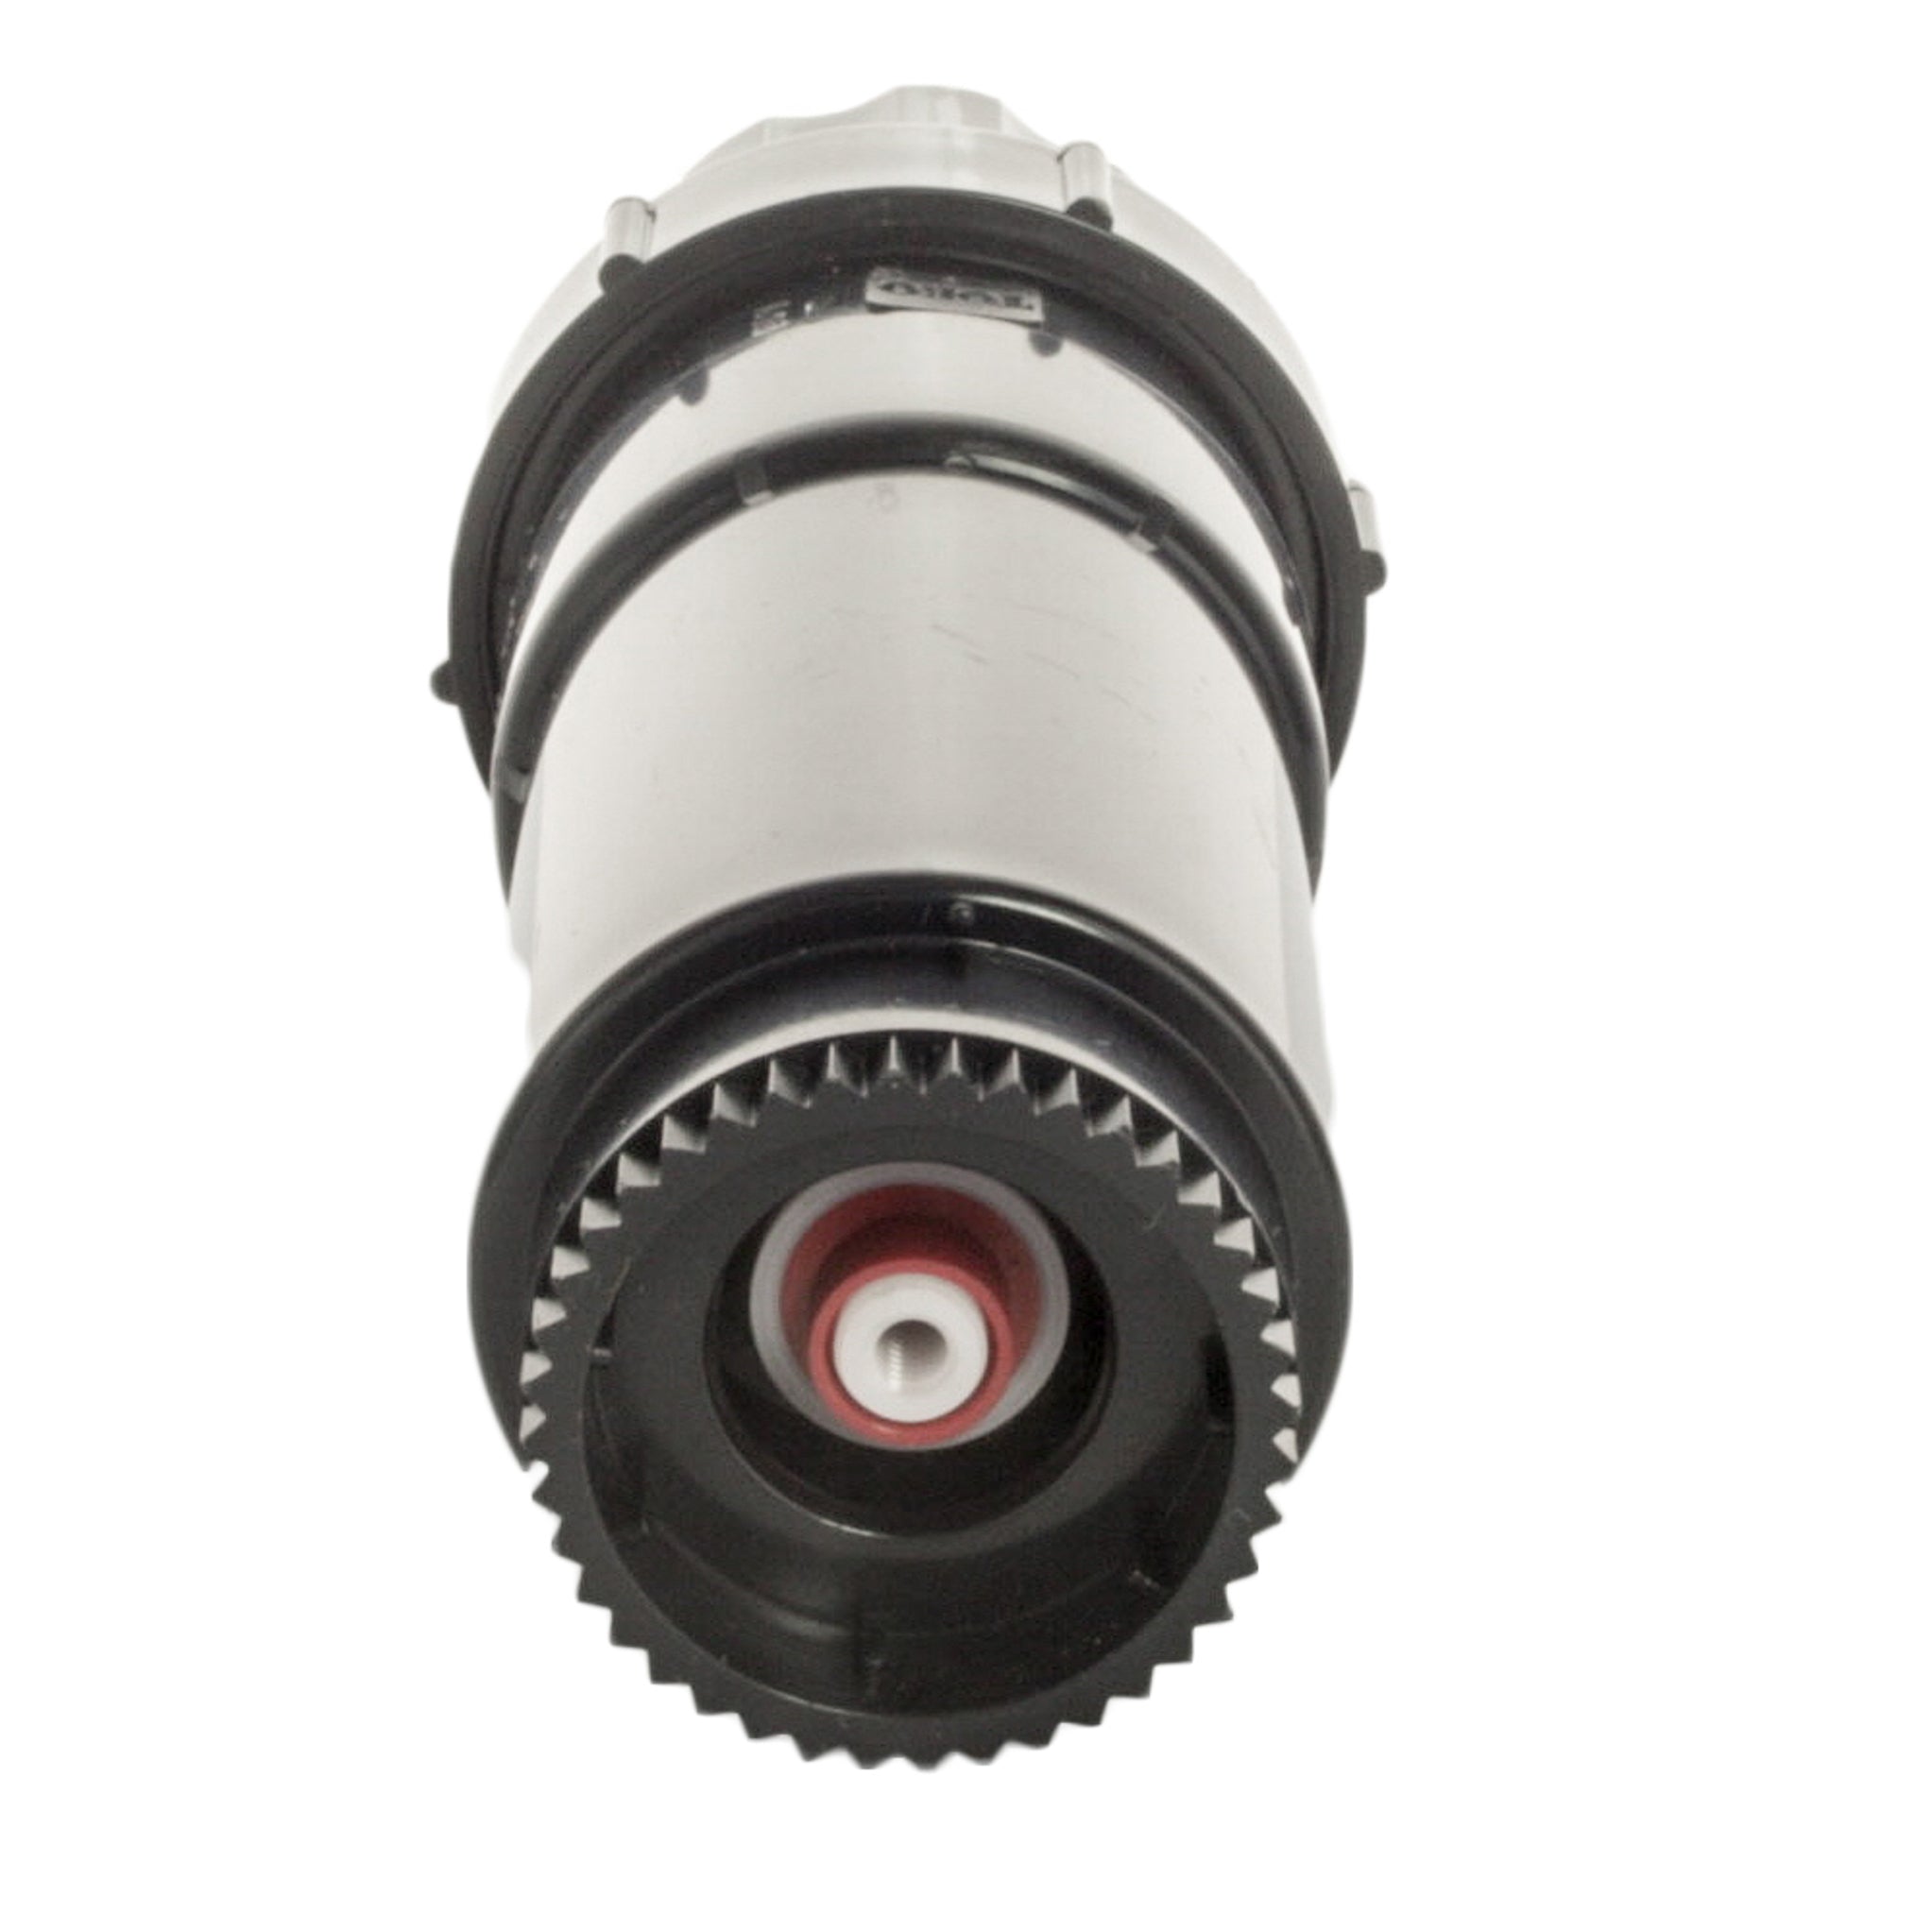 Toro - 300-10-00 - Shrub Rotor Less Nozzle & Arc Disc